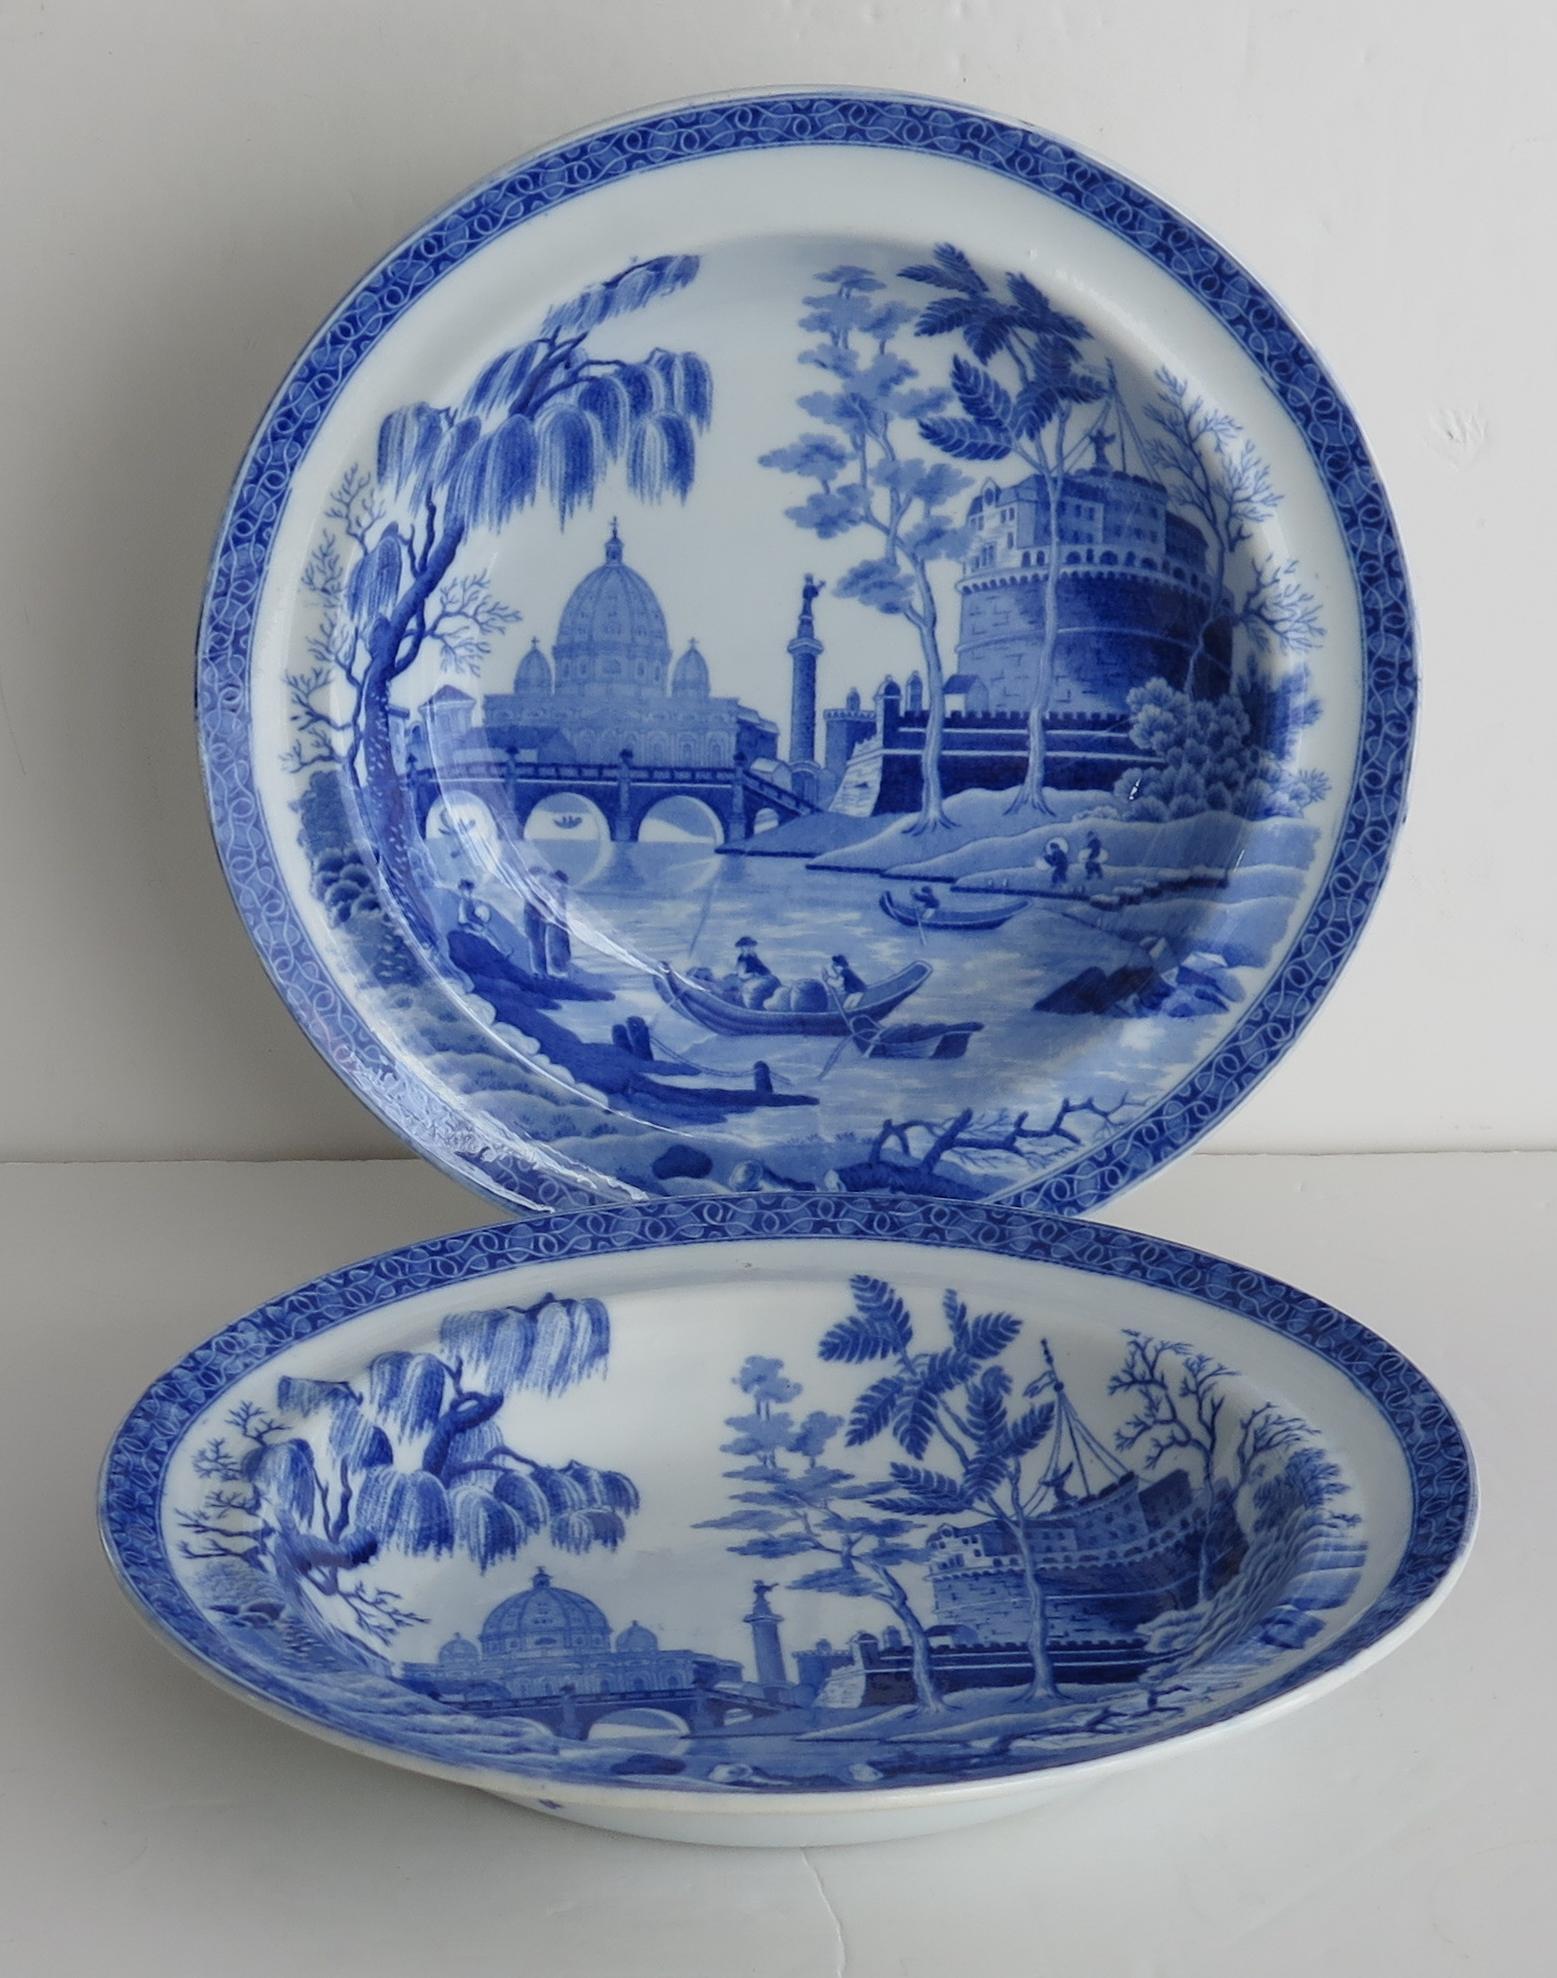 Il s'agit d'une belle paire d'assiettes creuses ou de bols à soupe au motif bleu et blanc de Rome ou du Tibre, produits par la manufacture Spode et fabriqués dans un type de poterie appelé Pearl-ware, au début du 19e siècle, vers 1815.

La vue en